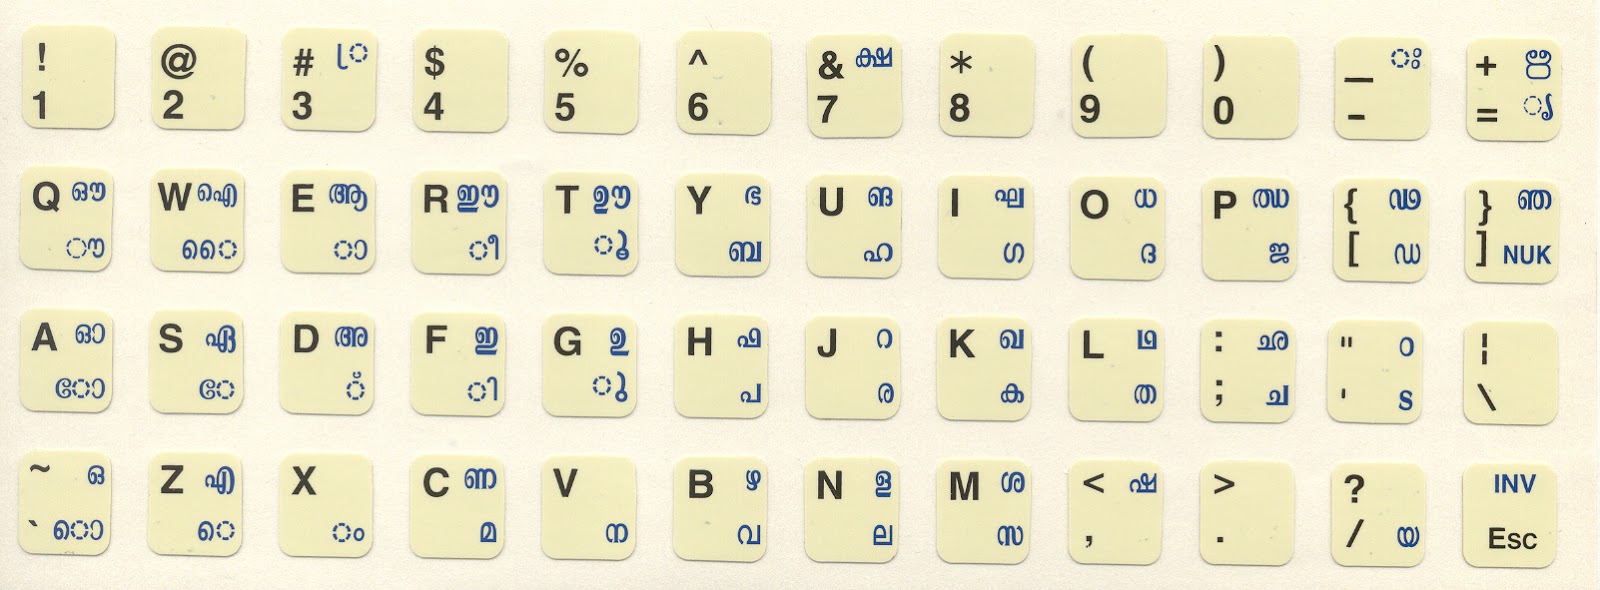 ism malayalam phonetic keyboard layout pdf